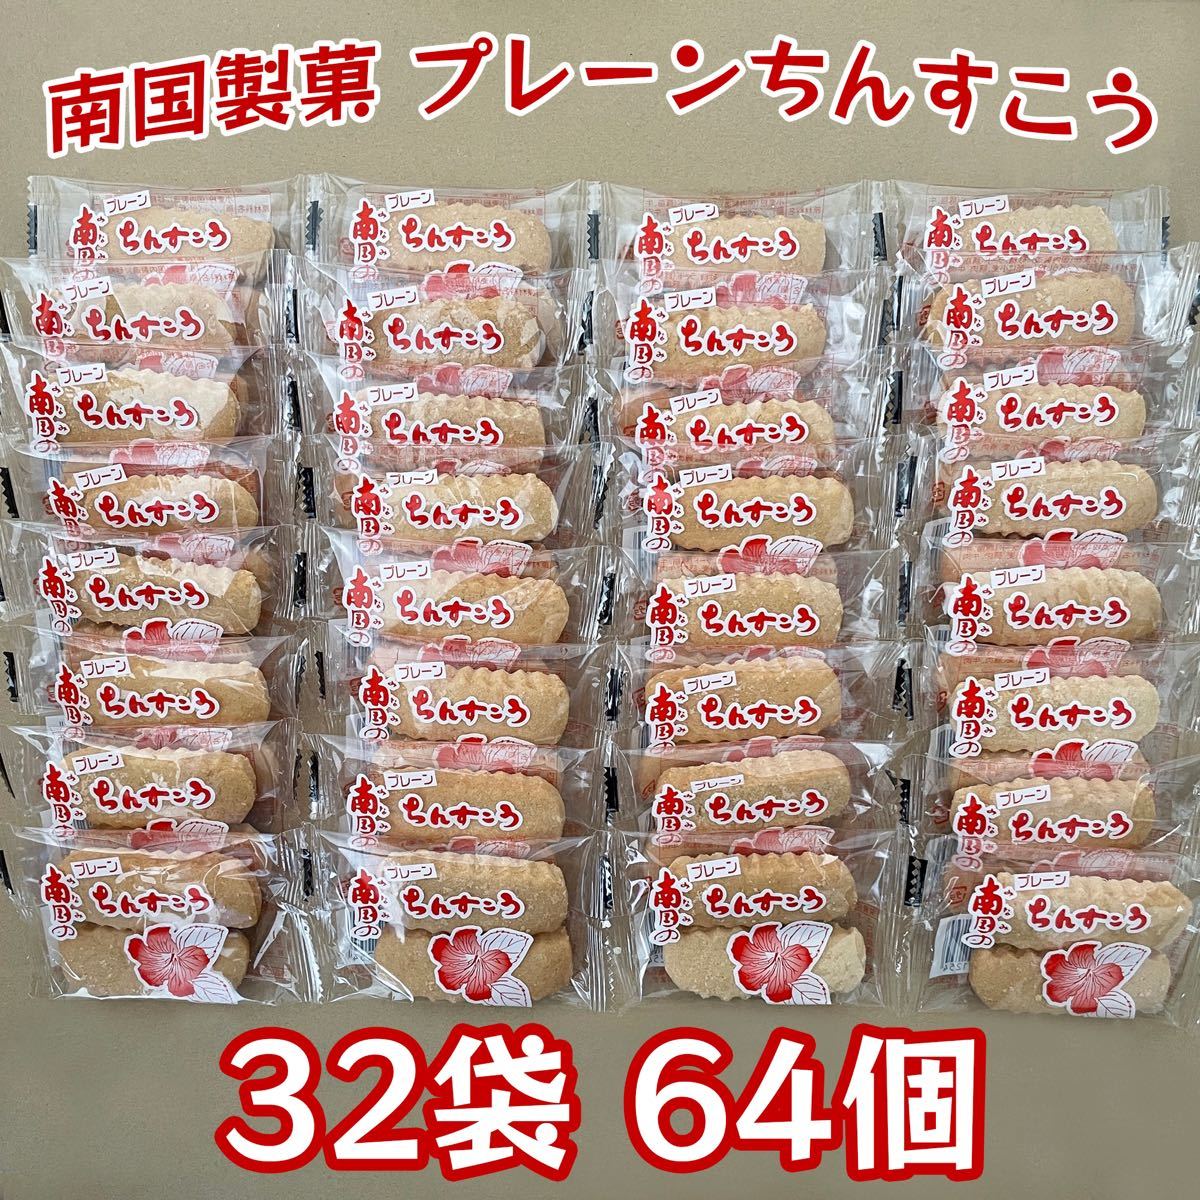 ちんすこう プレーン 32袋 64個 沖縄 お菓子 南国製菓